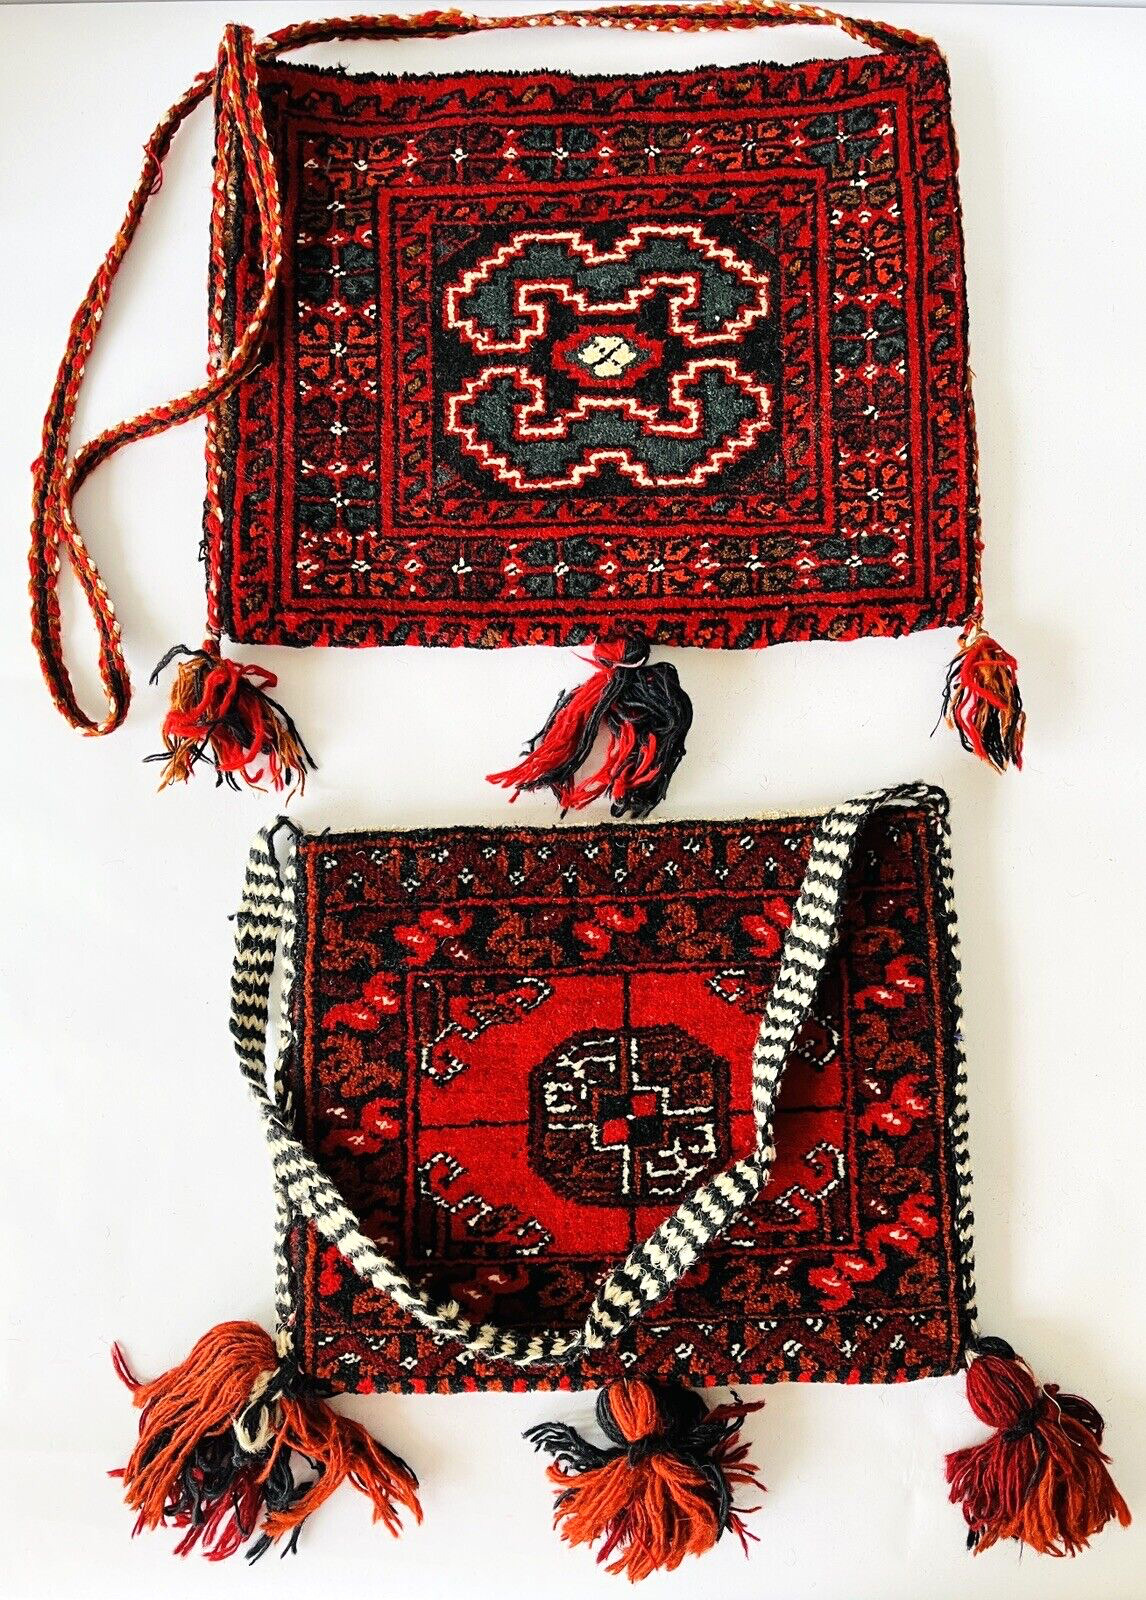 2 Single Camel Saddlebags / Shoulder Bags with Carpet & Tassels Saudi Arabia